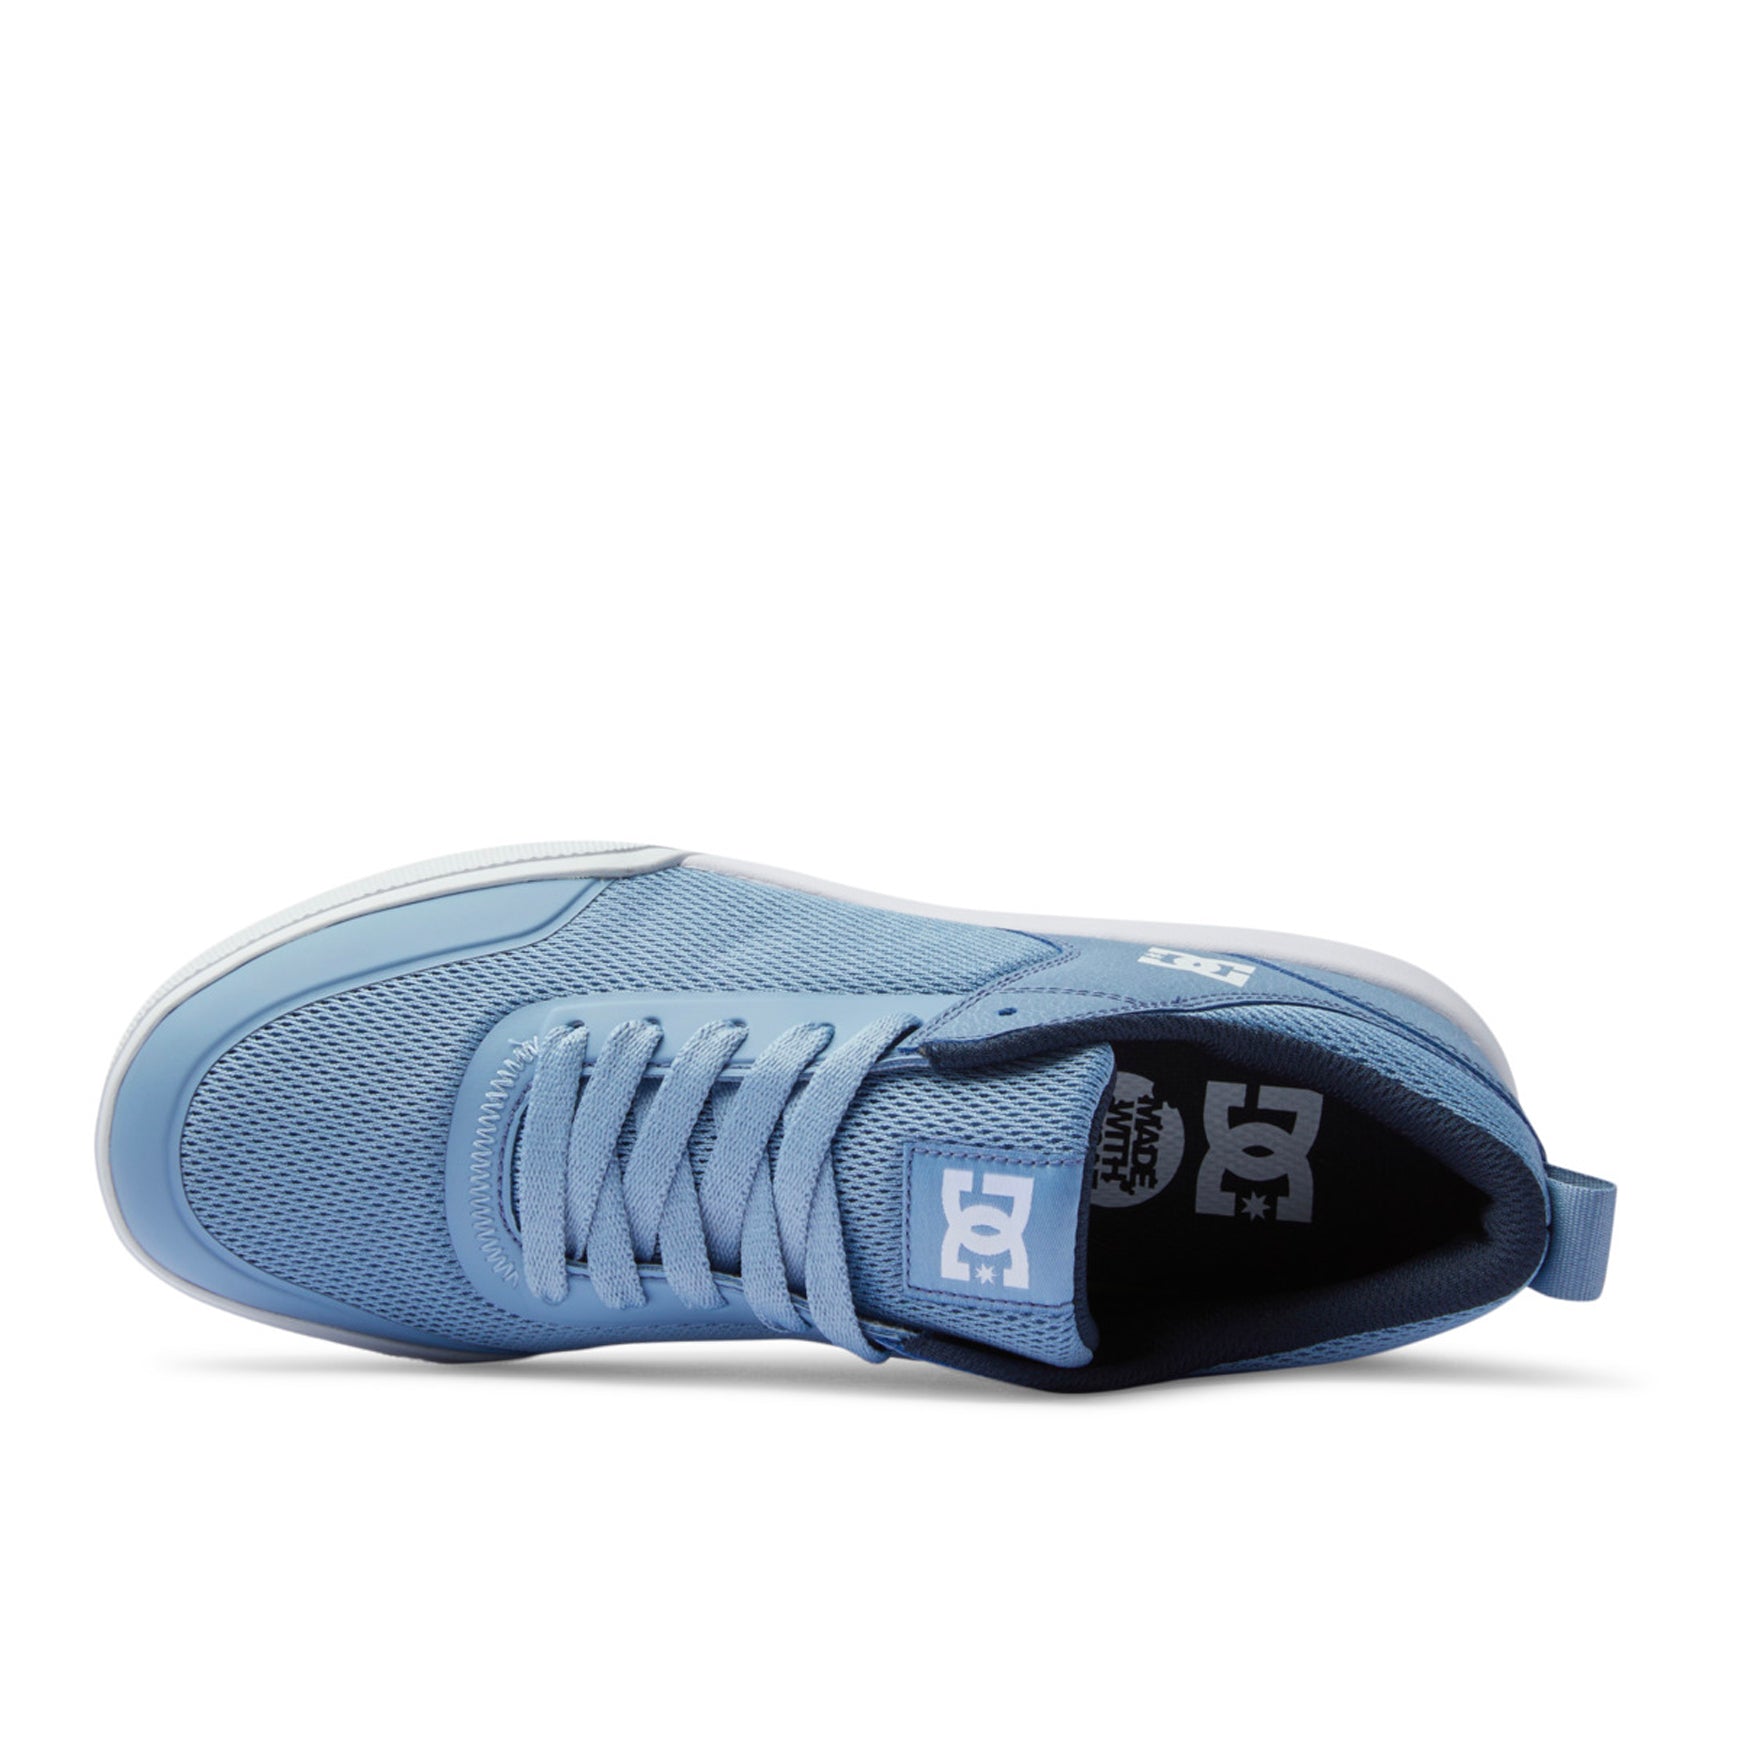 DC Transit Shoes - Light Blue - Prime Delux Store